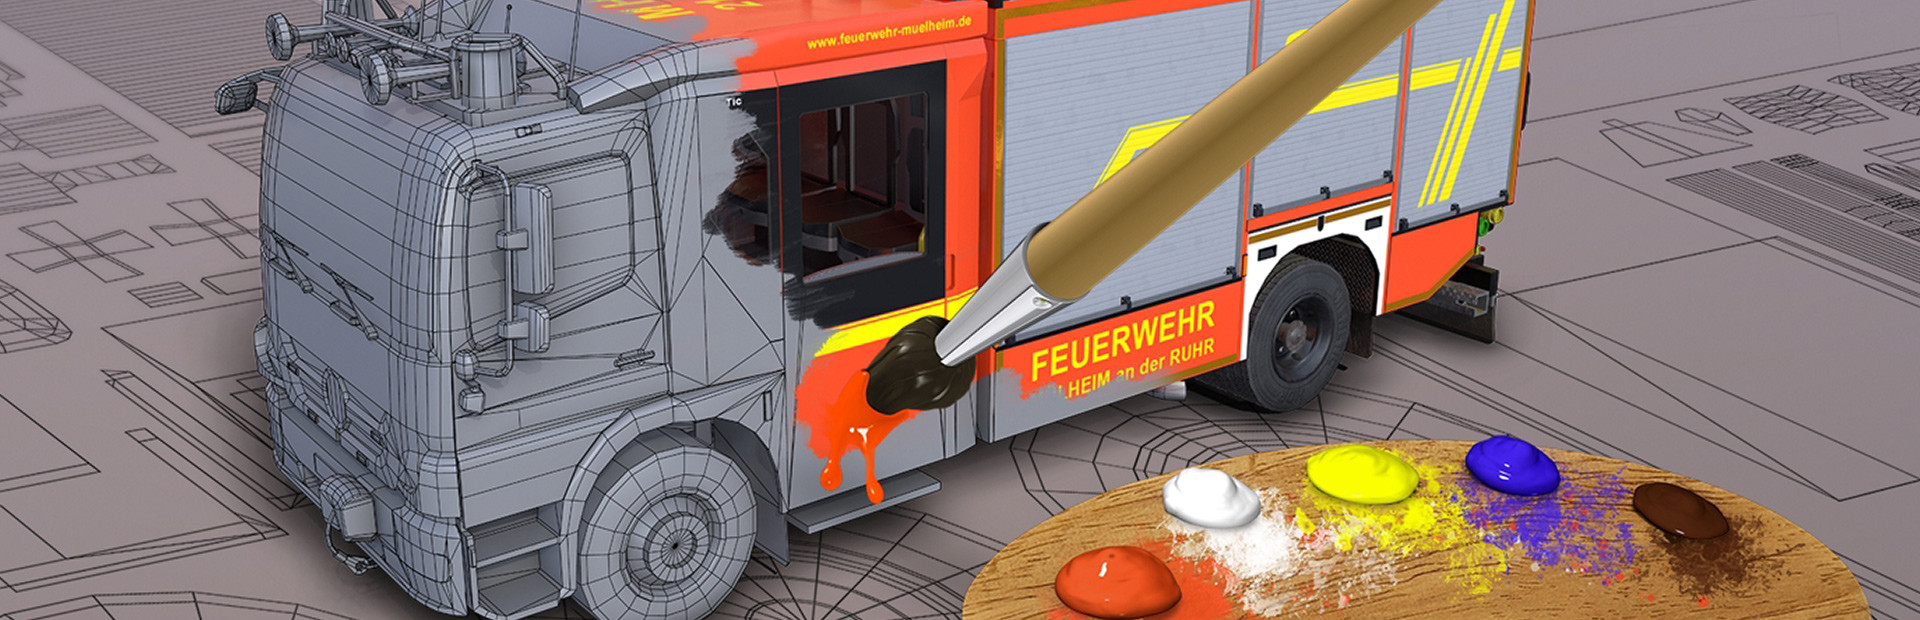 Notruf 112 - Die Feuerwehr Simulation 2: Showroom cover image